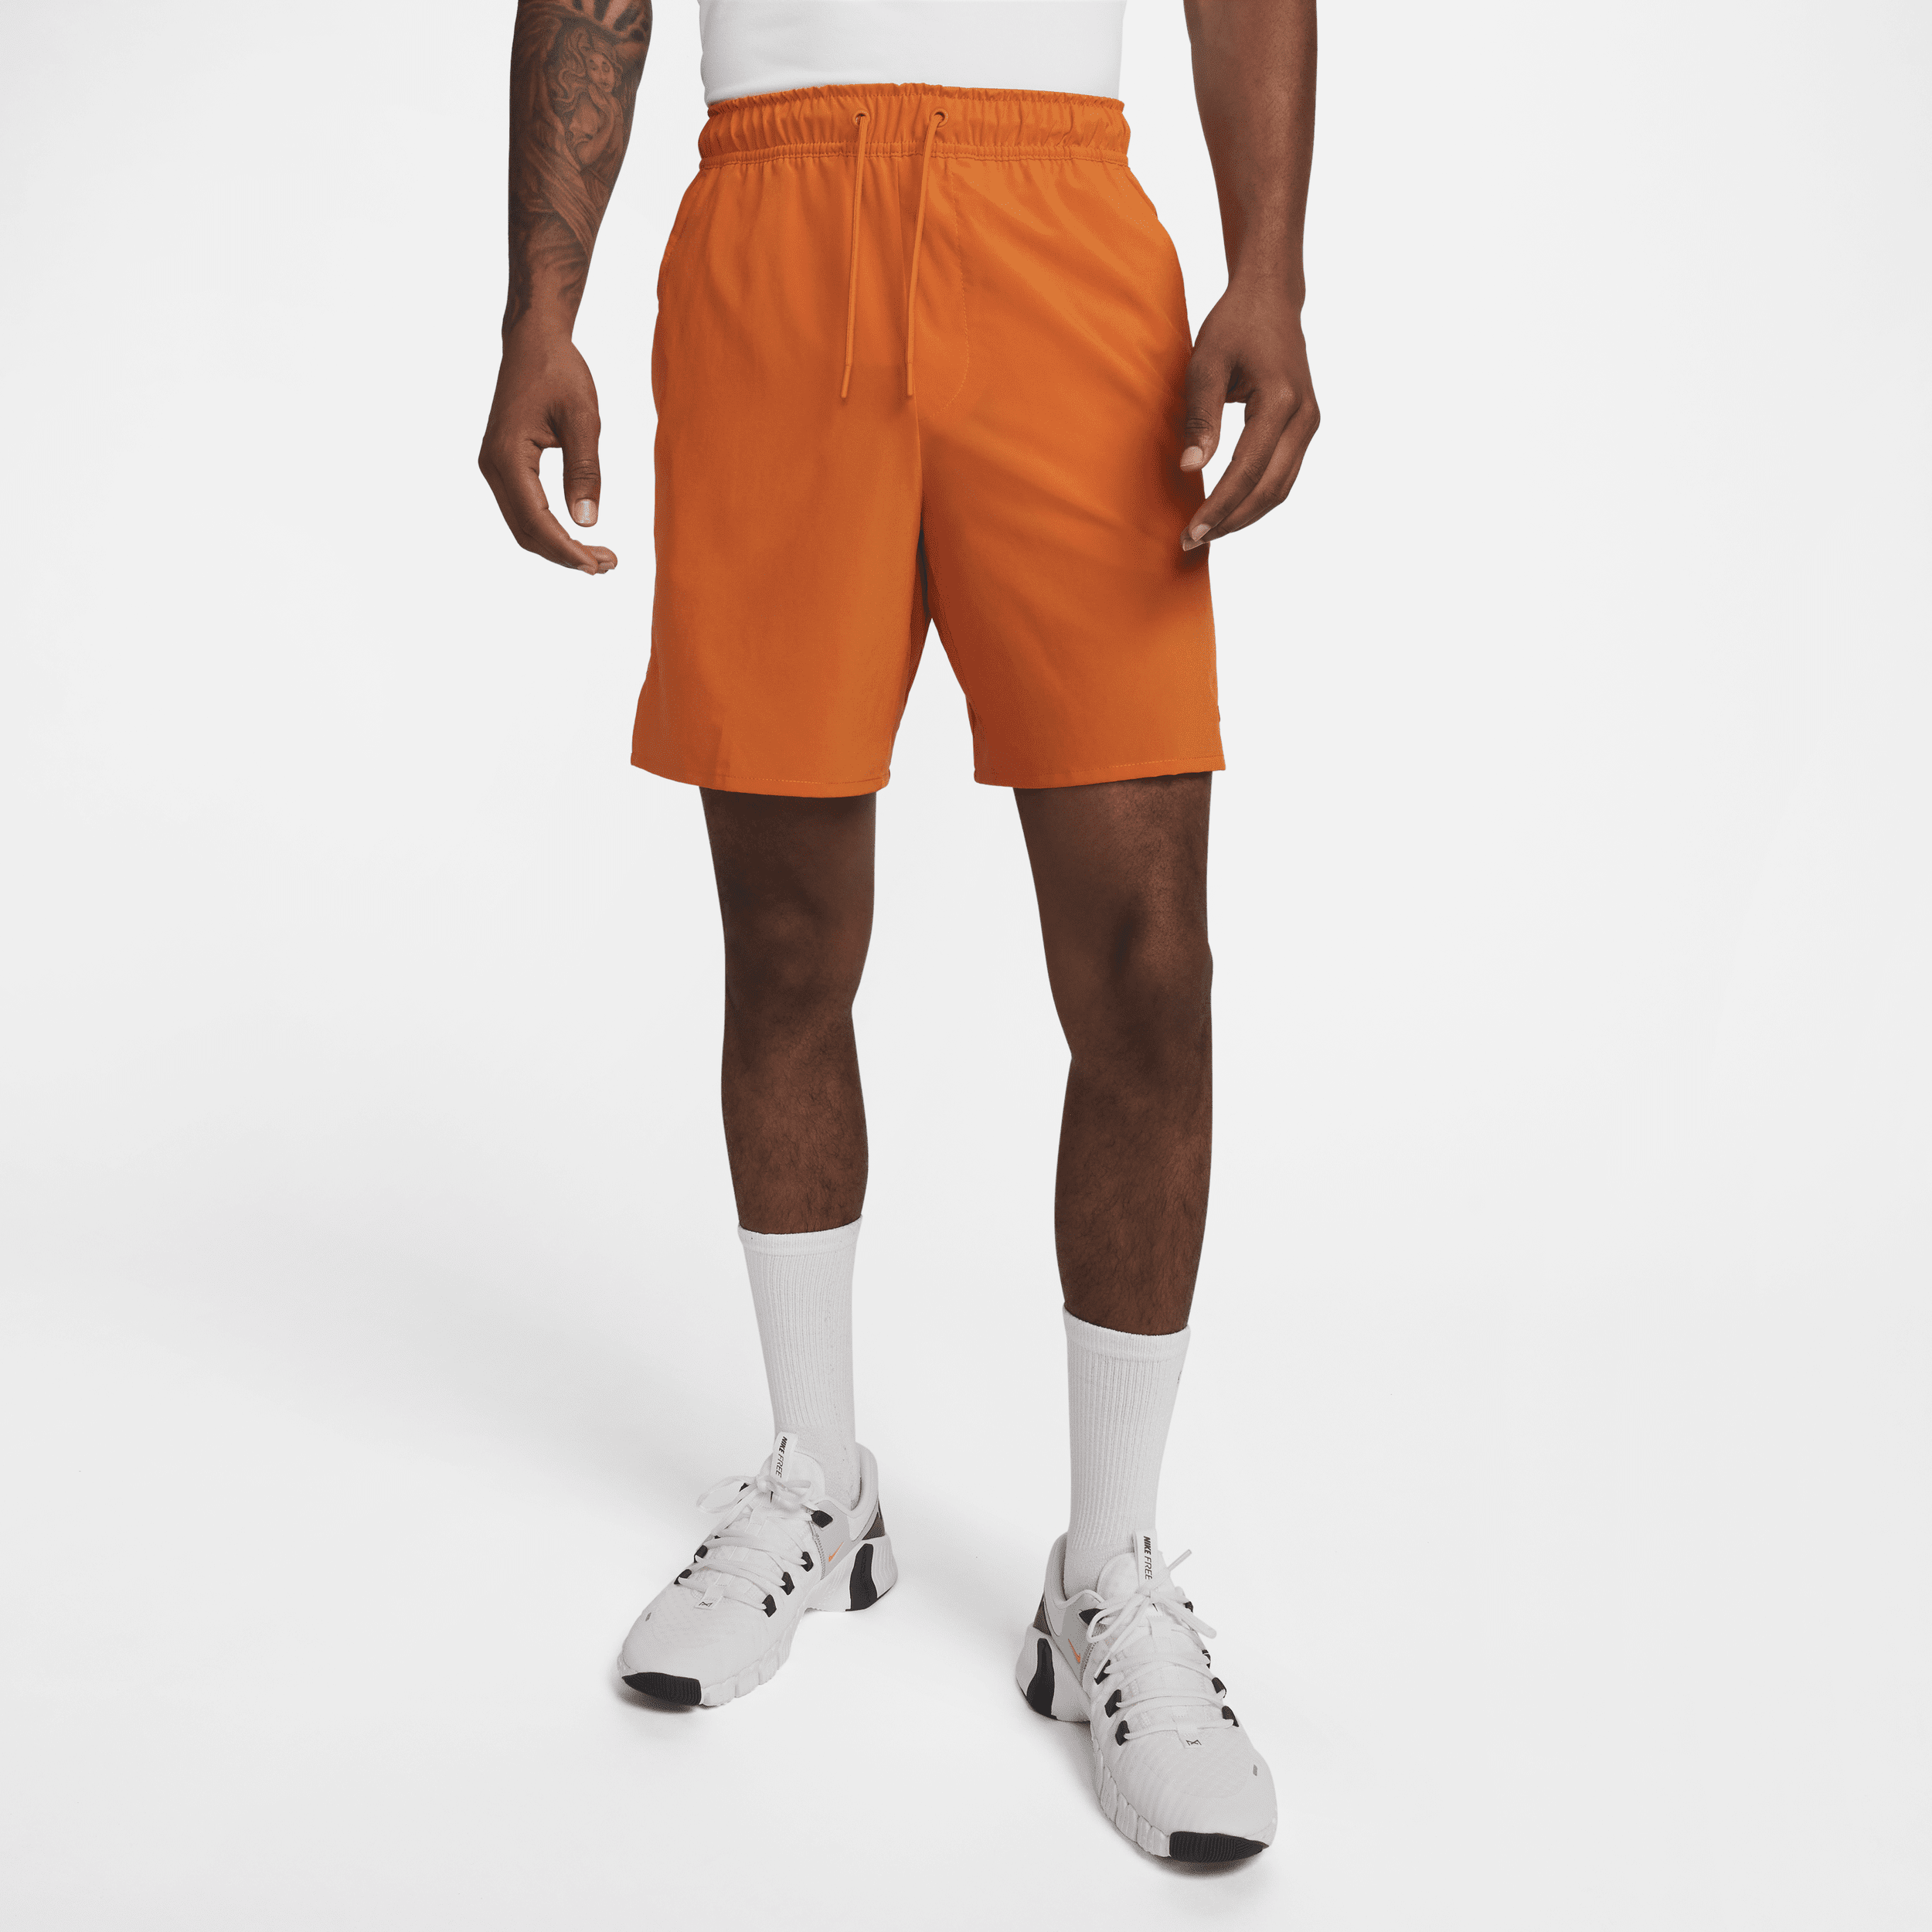 Alsidige Nike Unlimited-Dri-FIT-shorts (18 cm) uden for til mænd - Orange